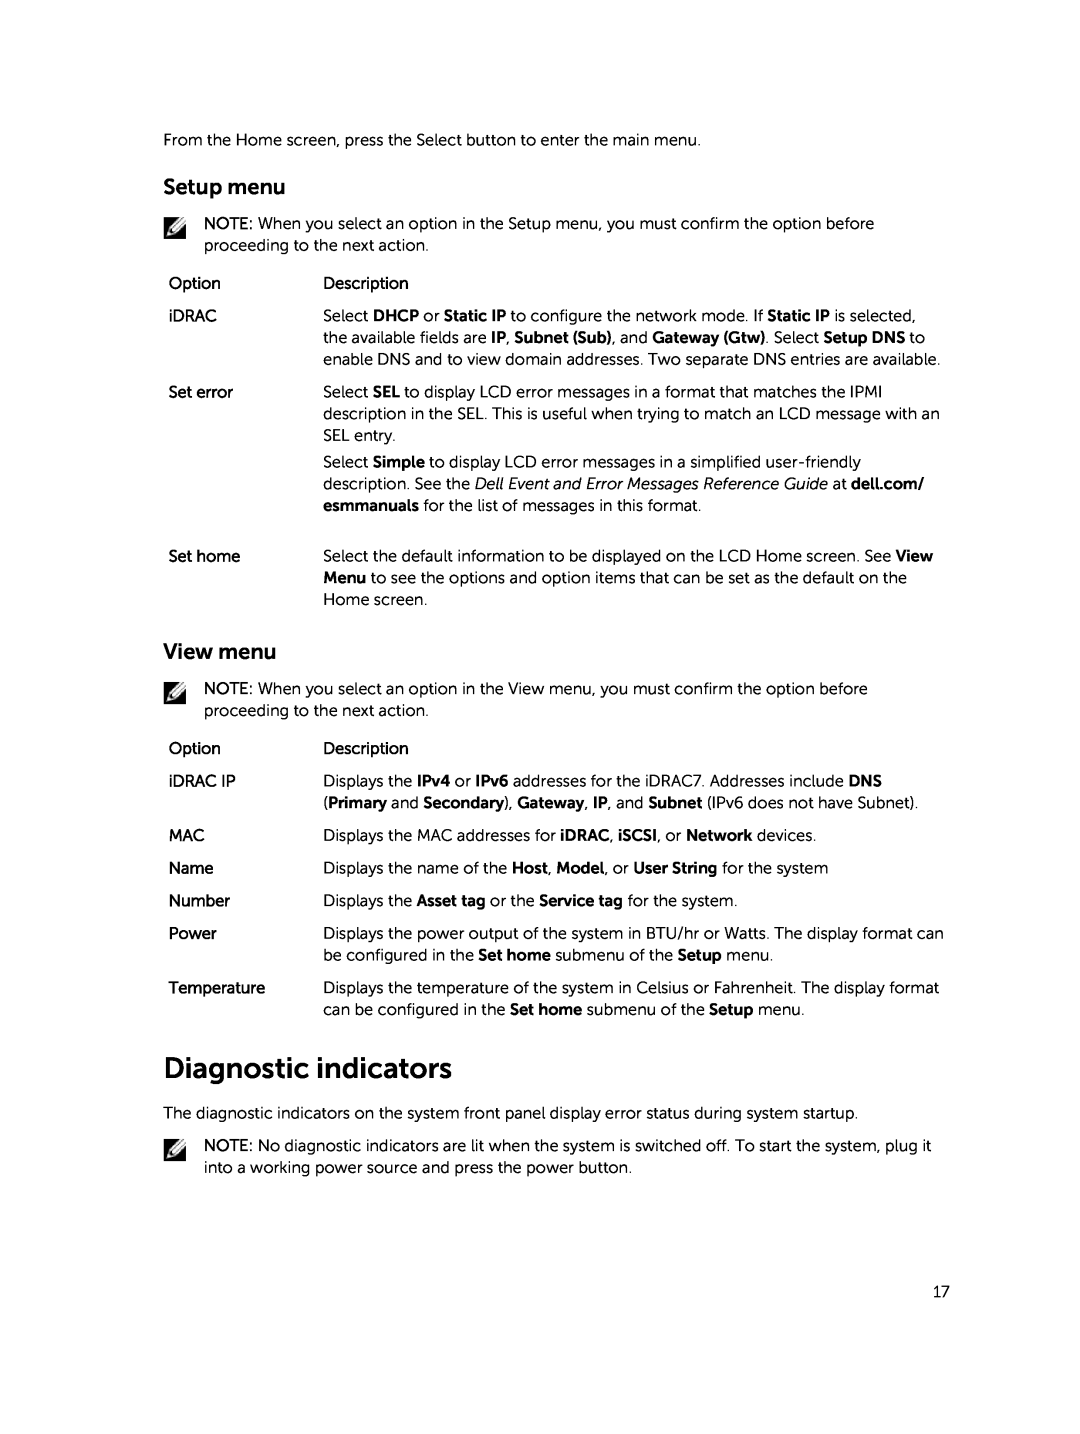 Dell E30S owner manual Diagnostic indicators, Setup menu, View menu 